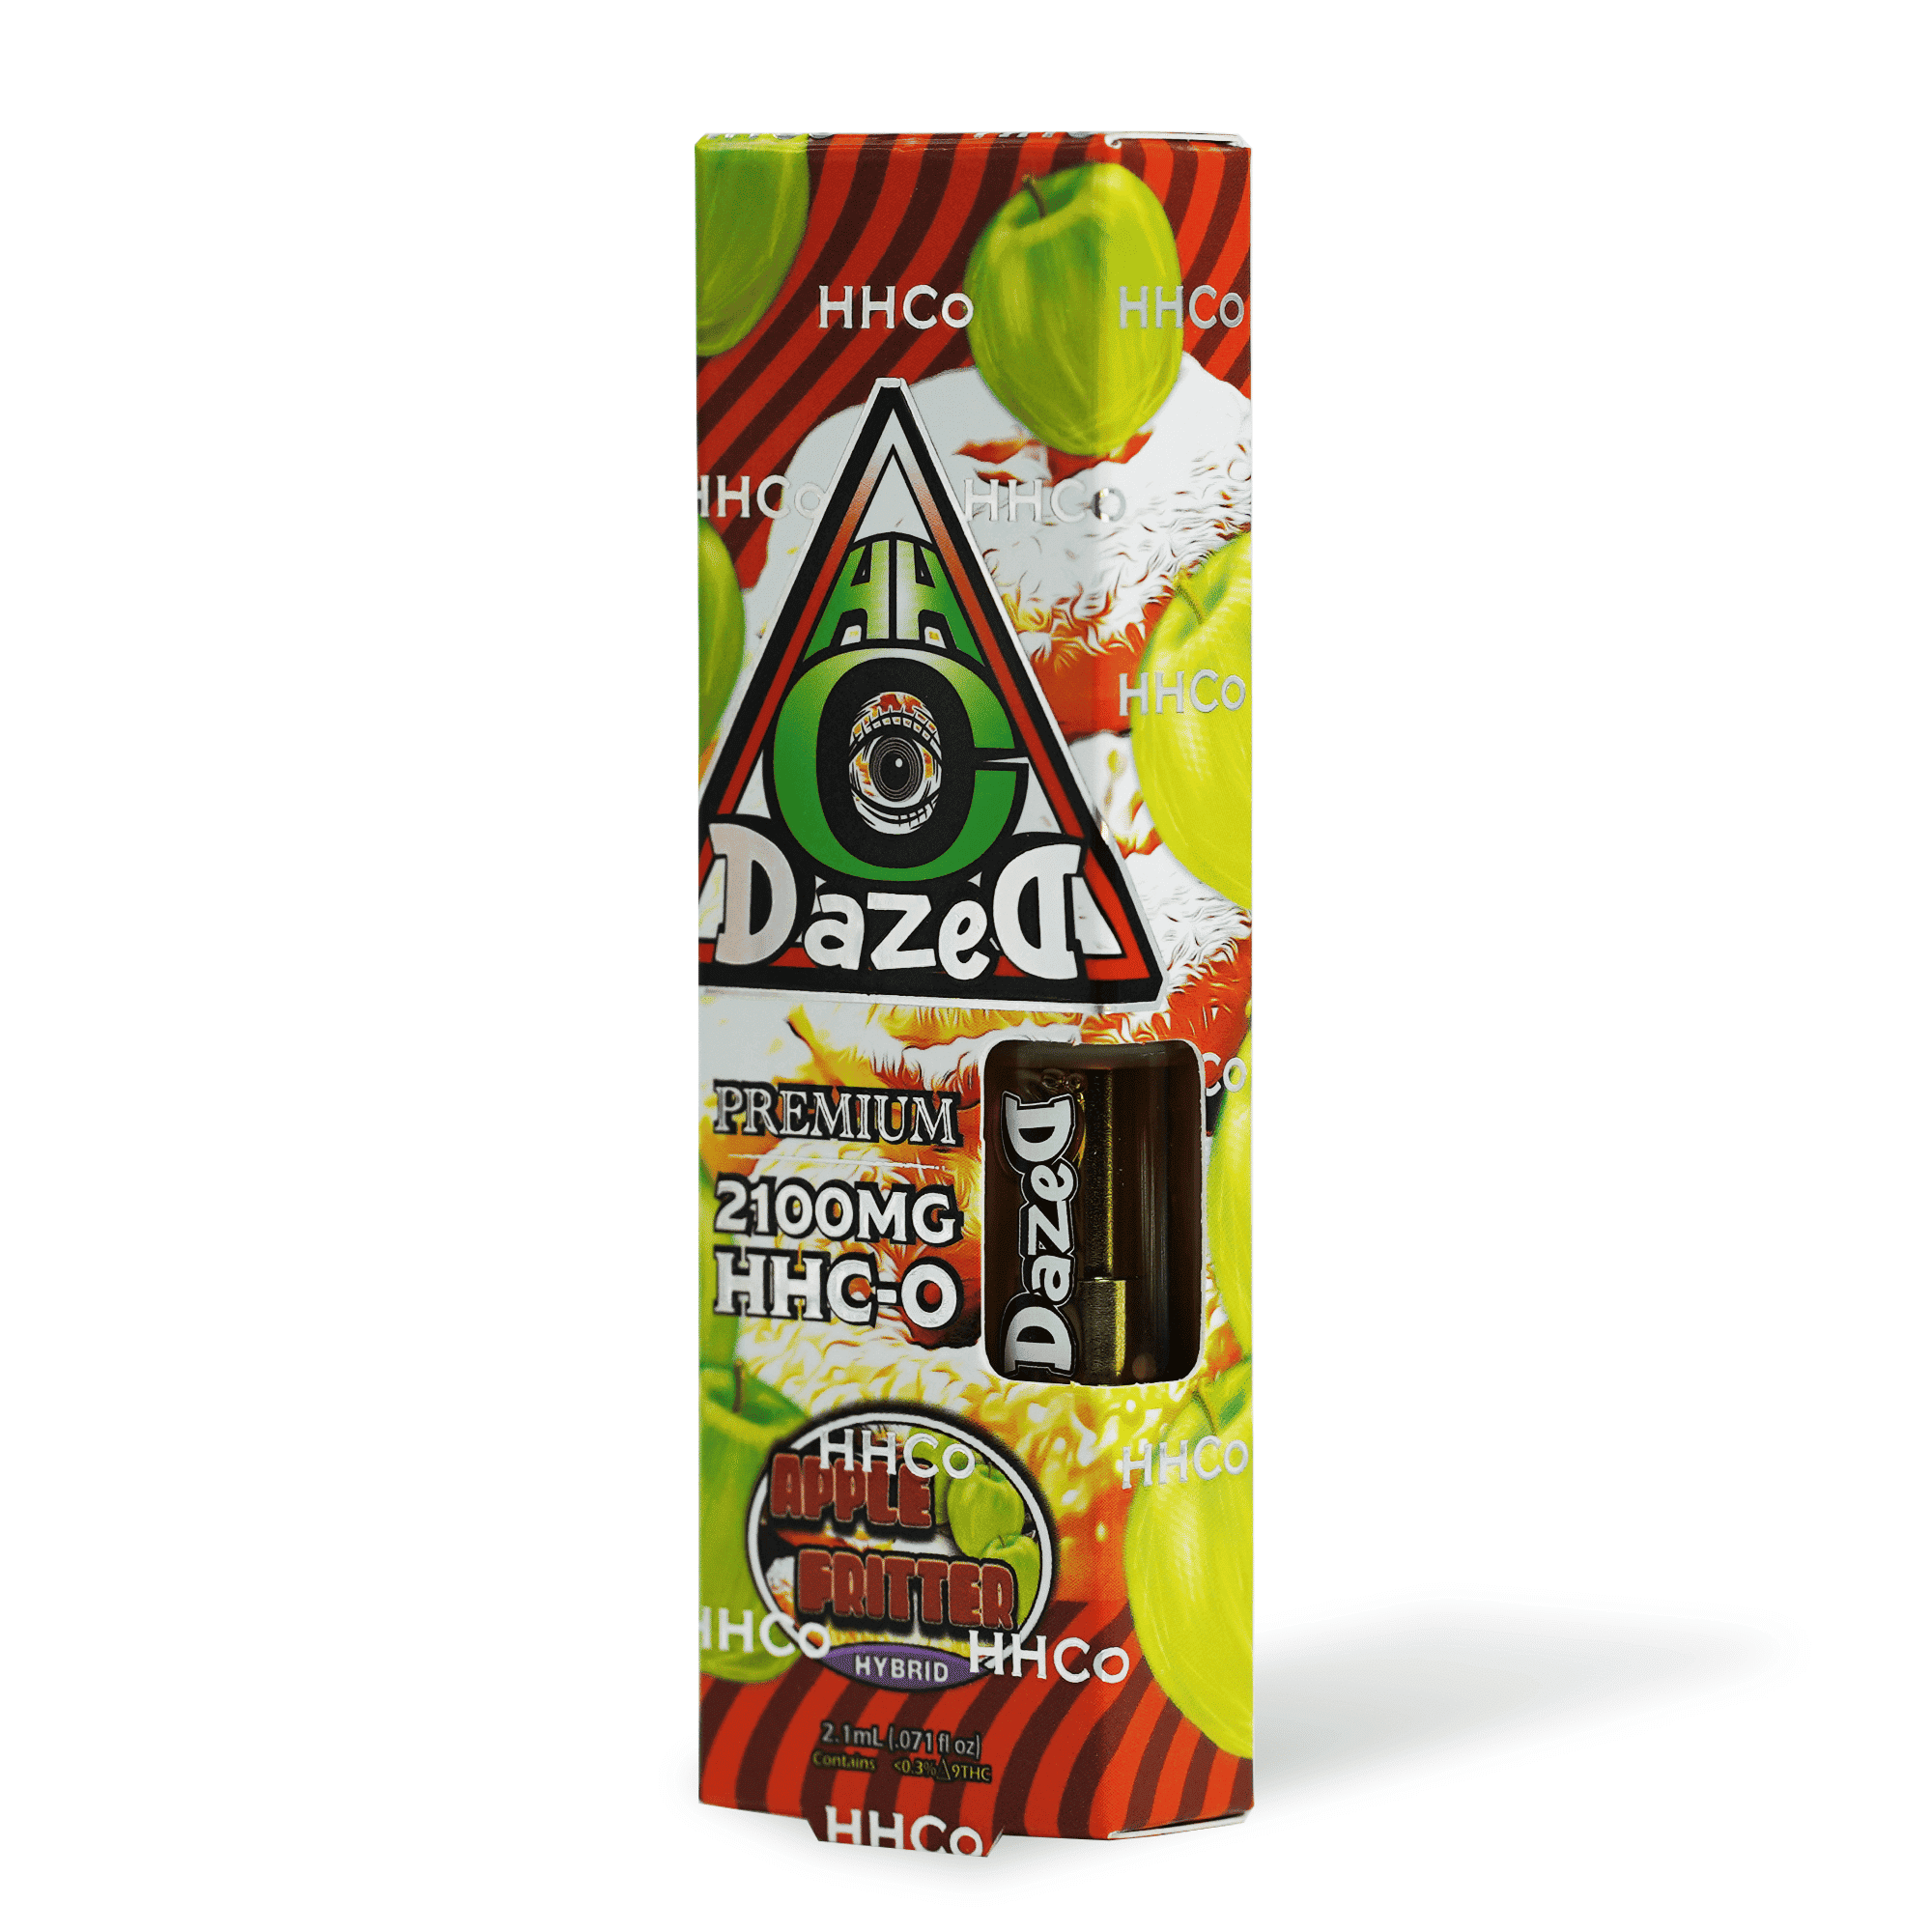 DazeD8 Apple Fritter HHC-O Cartridge (2.1g) Best Price